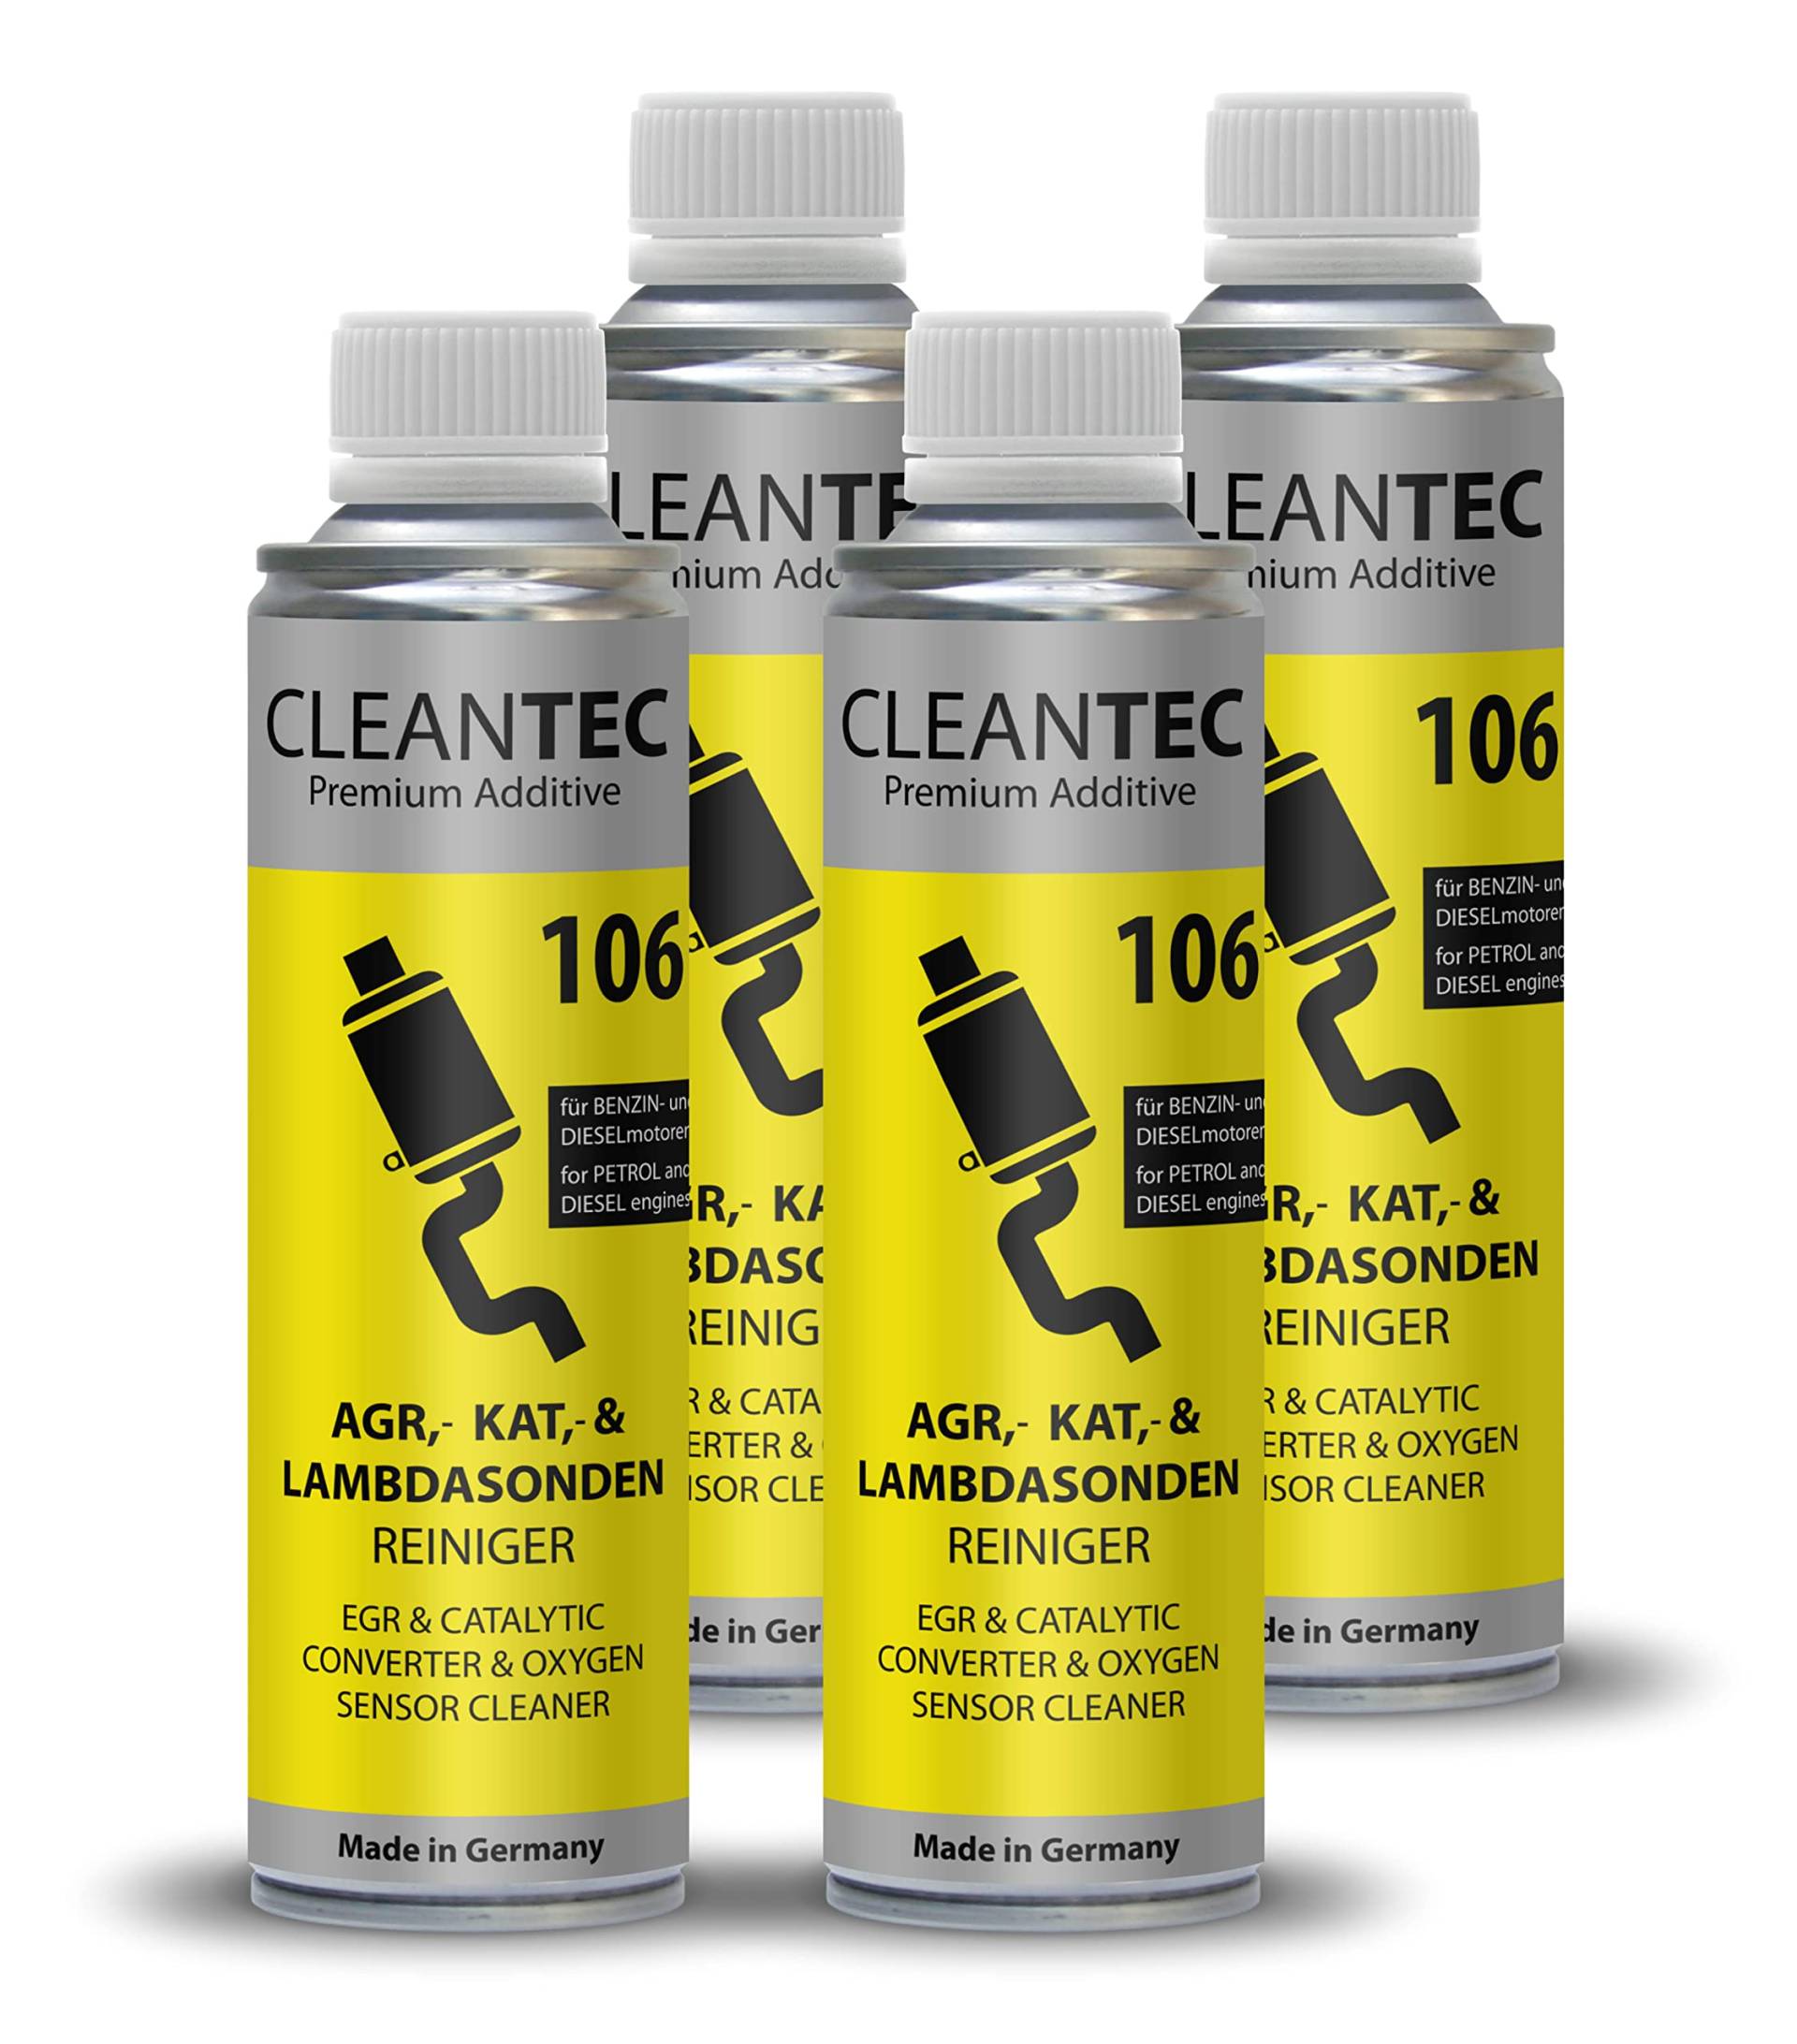 CleanTEC 106 Innovativer Oxicat, Kat, Lambdasonden, Katalysator, AGR Ventil, EGR, Turbo Reiniger Additiv 300ml für Diesel und Benzin Fahrzeuge geeignet (4) von cms CleanTEC GmbH